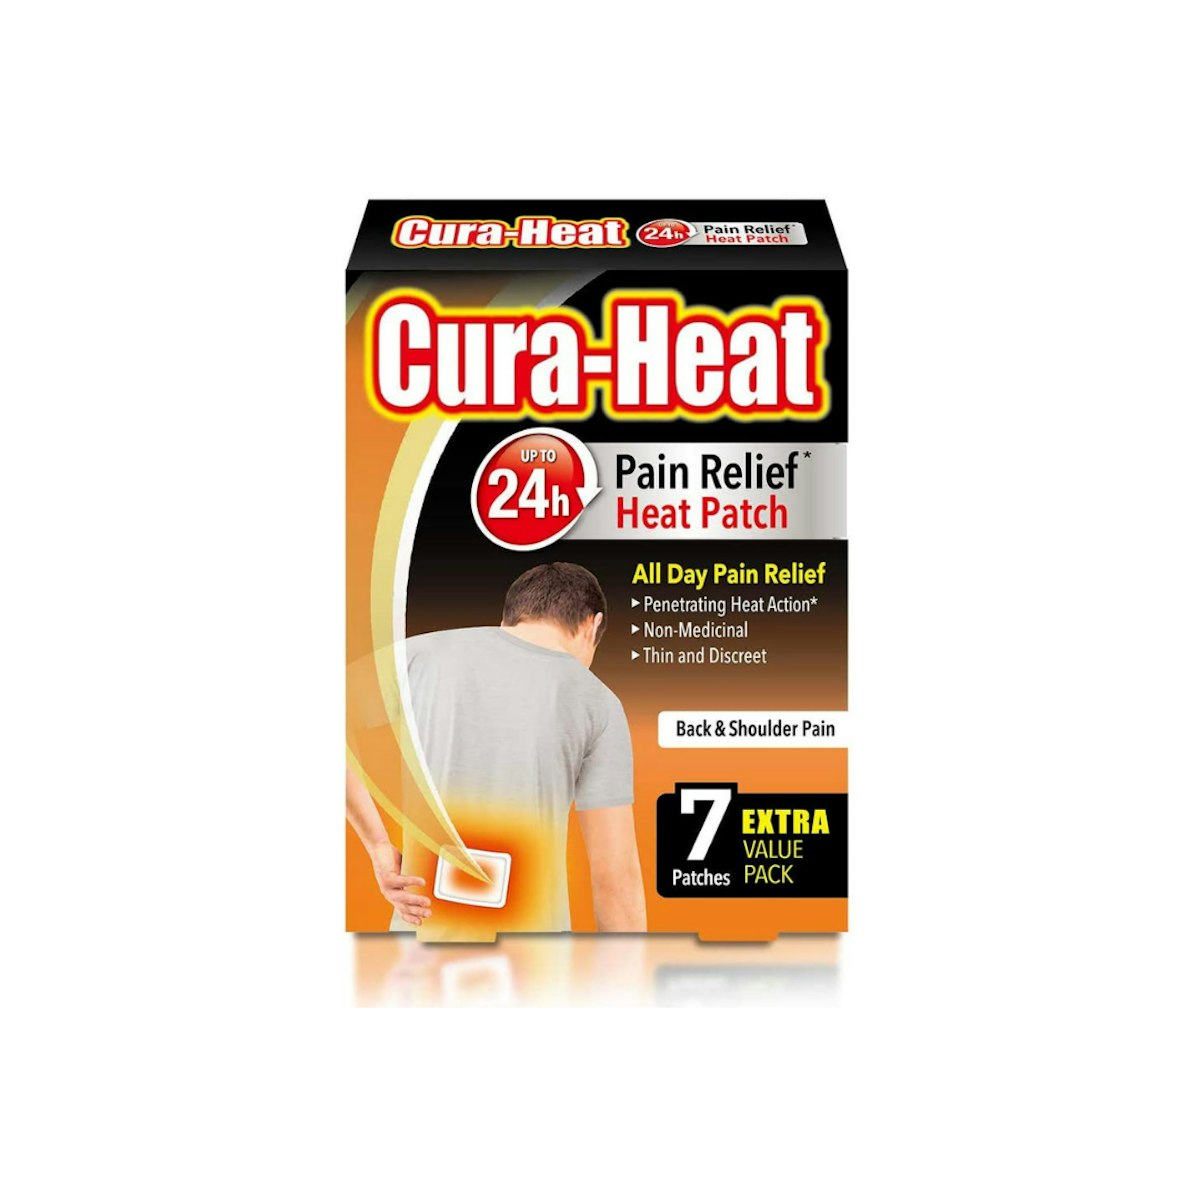 Cure Heat Pad ?auto=format&w=1200&q=80